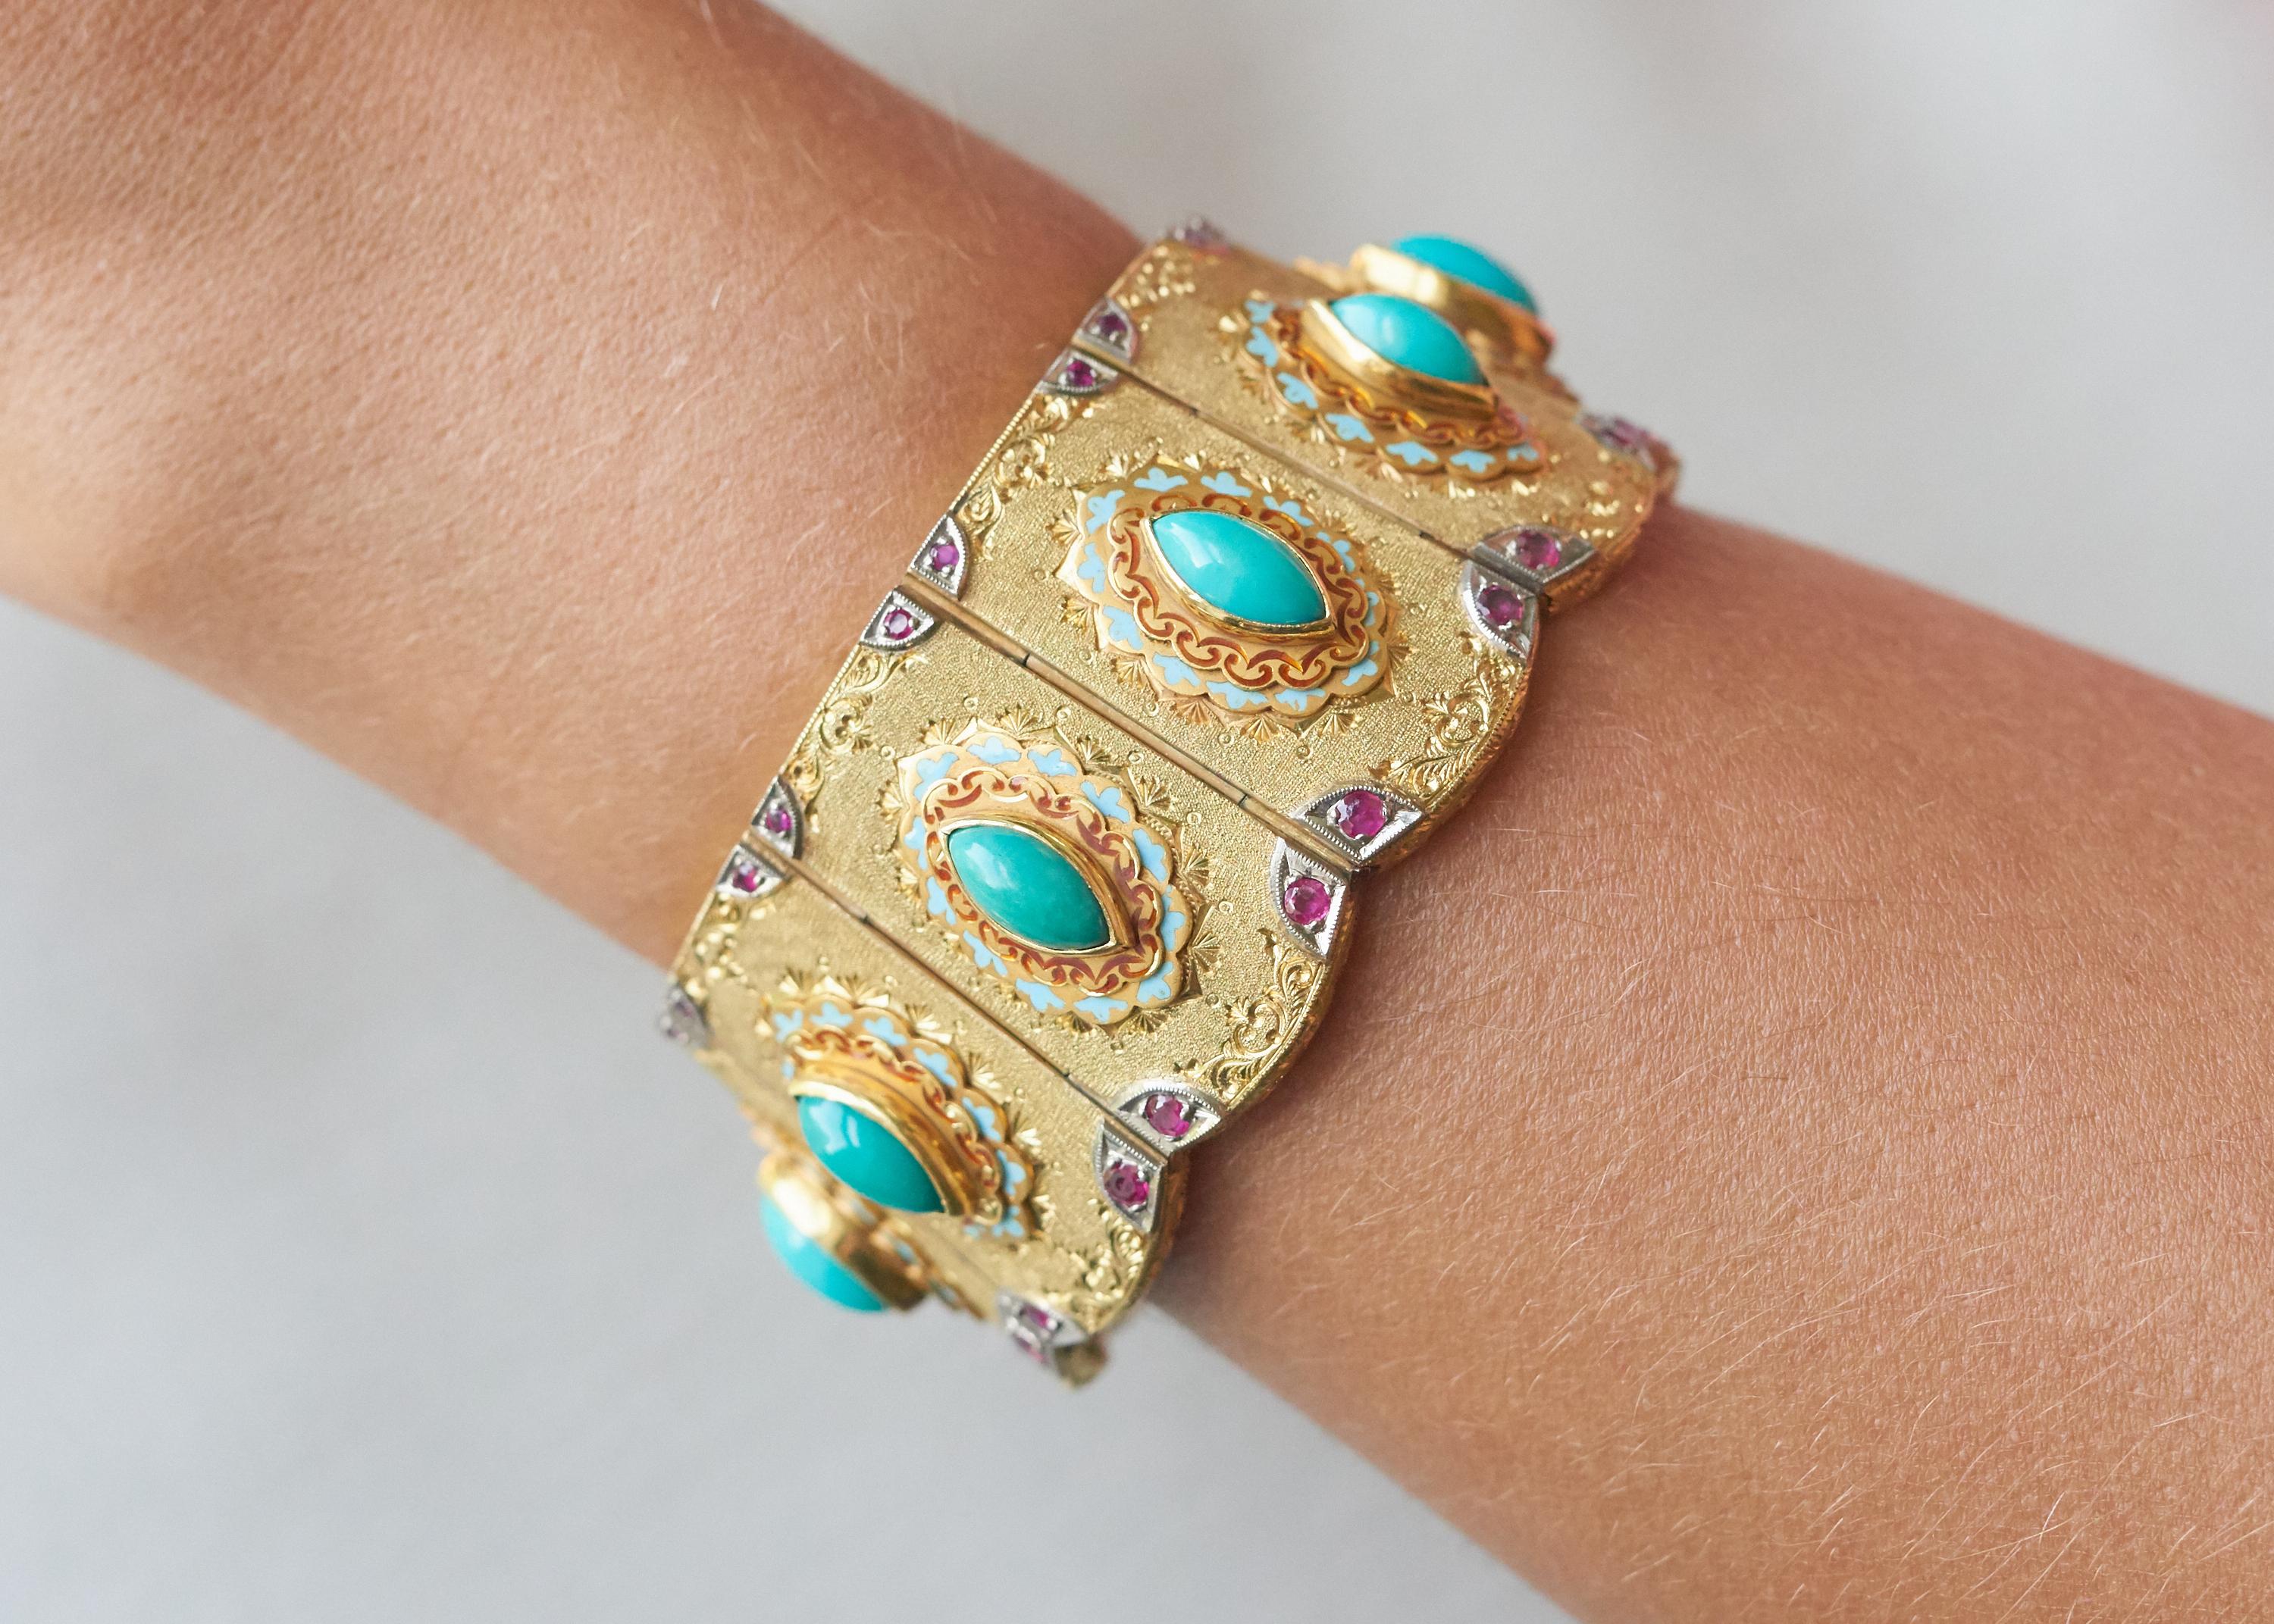 Handgefertigtes, einzigartiges Armband aus Türkis, Rubin, Emaille und 18-karätigem Gold mit Wellenschliff von Angelo Giorgio Cazzaniga, um 1960. Signiert Cazzaniga, AGC, gestempelt 750. 

Dieses exquisite Armband ist typisch für den Cazzaniga-Stil,